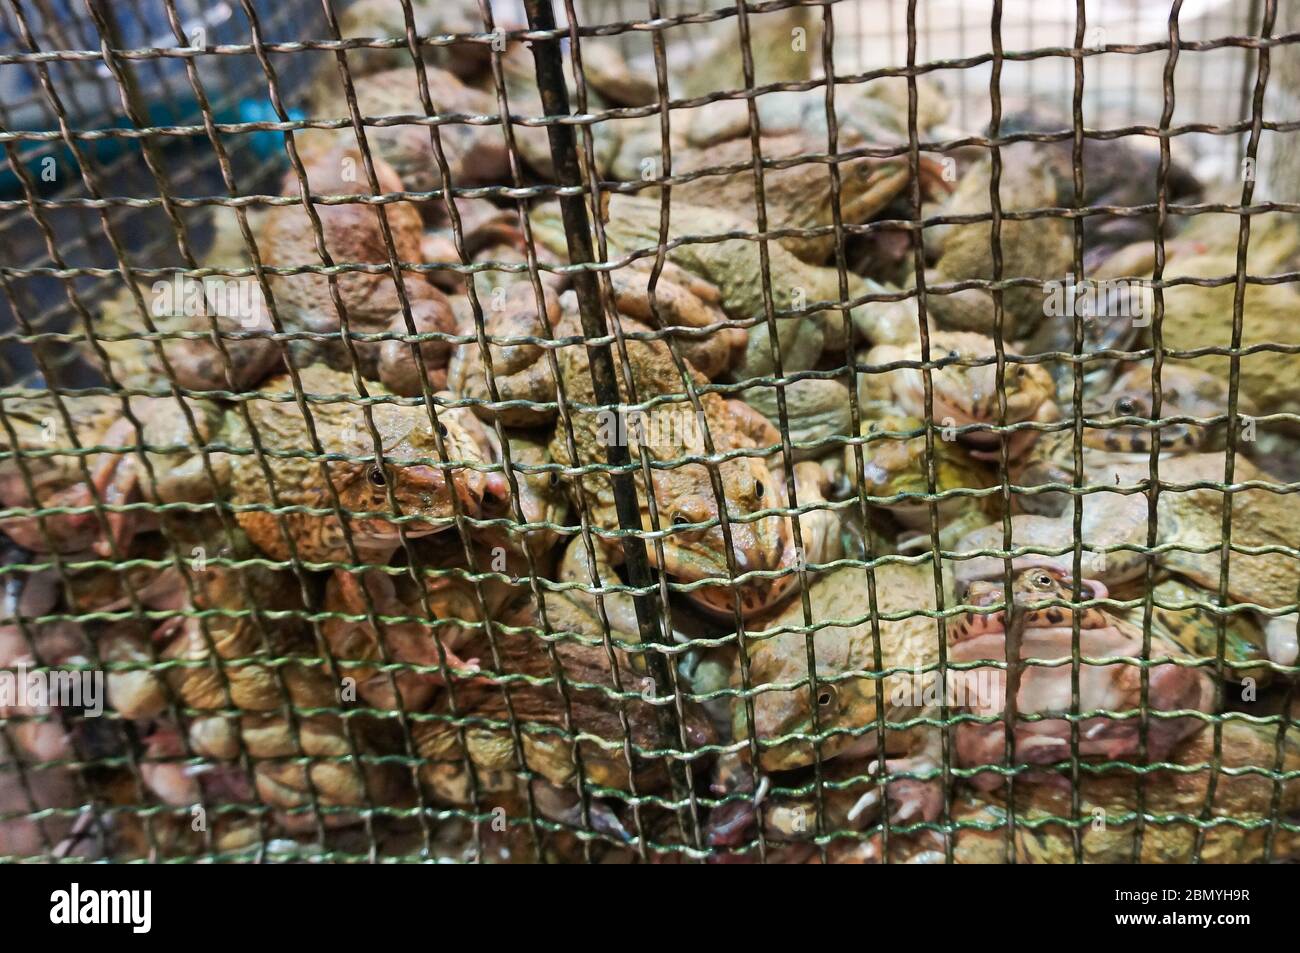 Viva ranas de toro de Asia Oriental o ranas taiwanesas en una jaula para la venta como manjares en un mercado de vida silvestre en China. Foto de stock